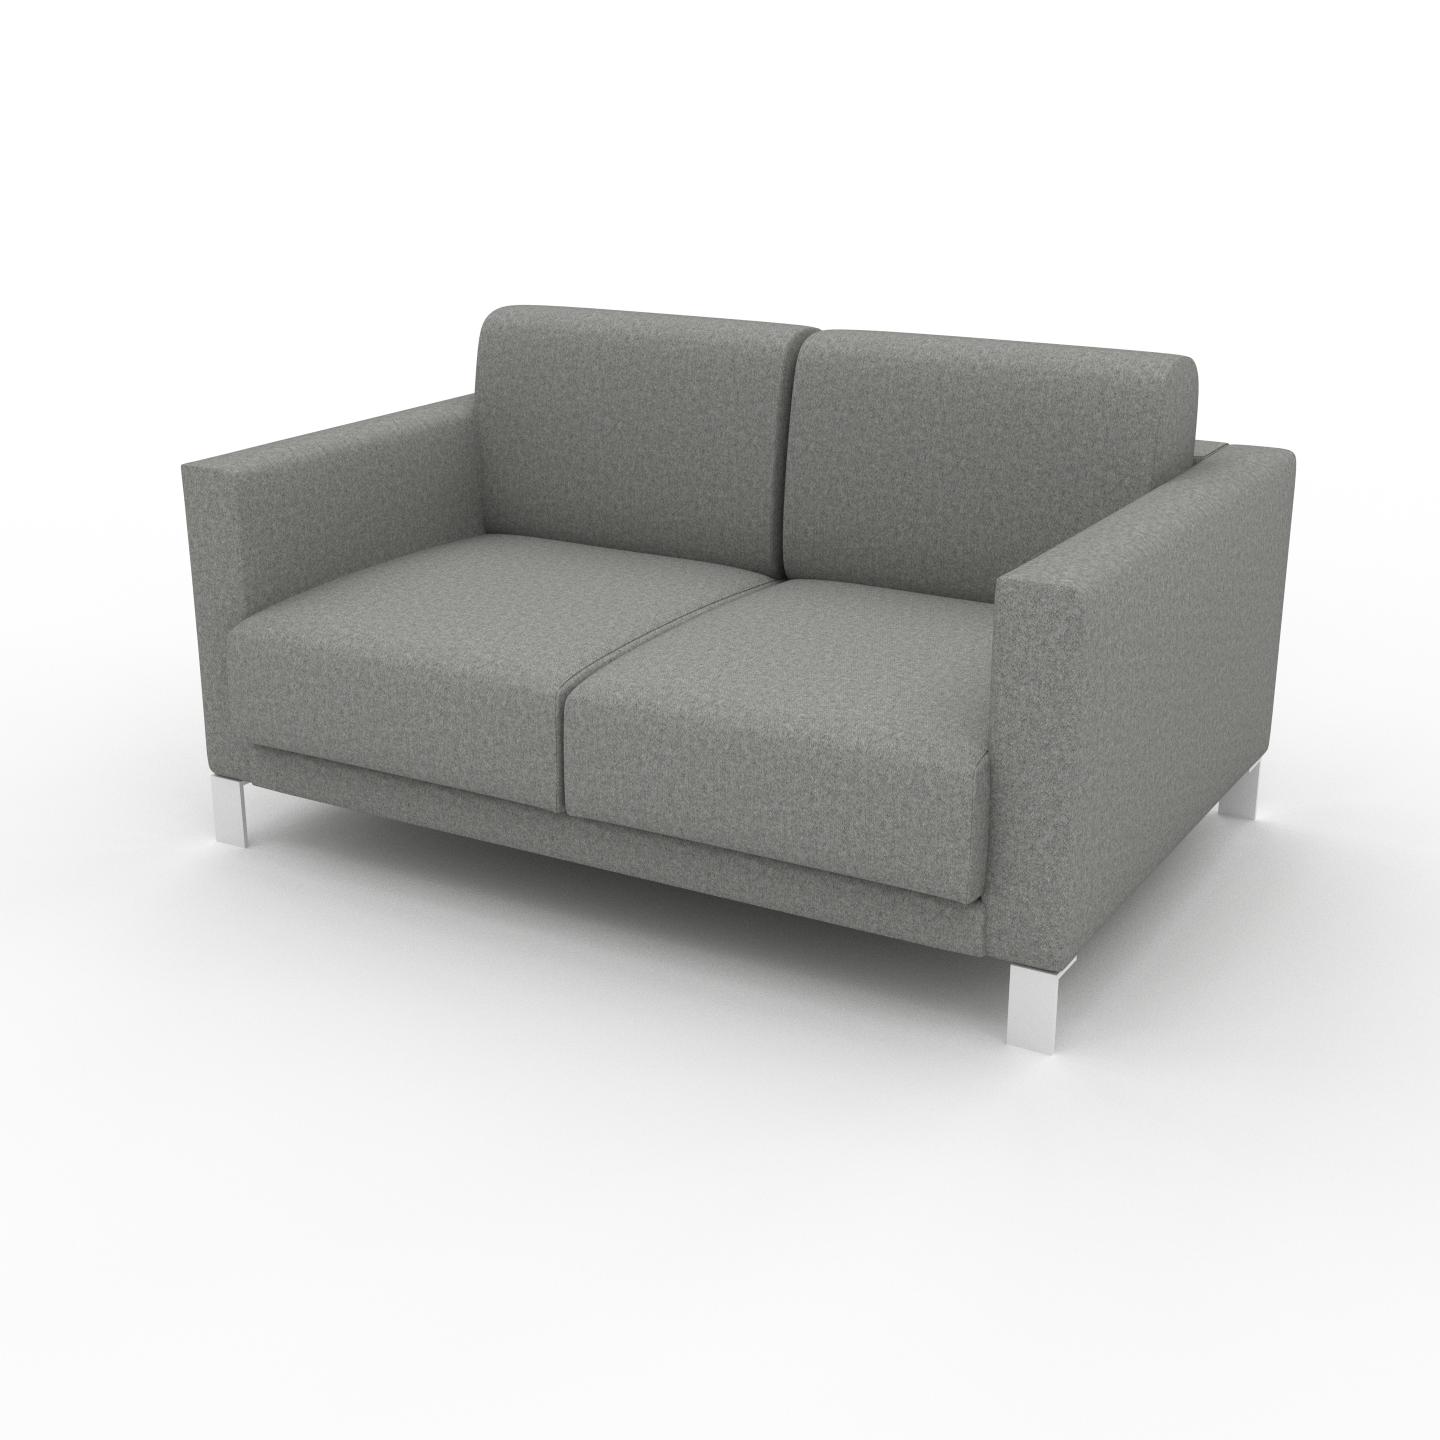 MYCS Sofa 2-Sitzer Lichtgrau Wolle - Elegantes, gemütliches 2-Sitzer Sofa: Hochwertige Qualität, einzigartiges Design - 144 x 75 x 98 cm, konfigurierbar